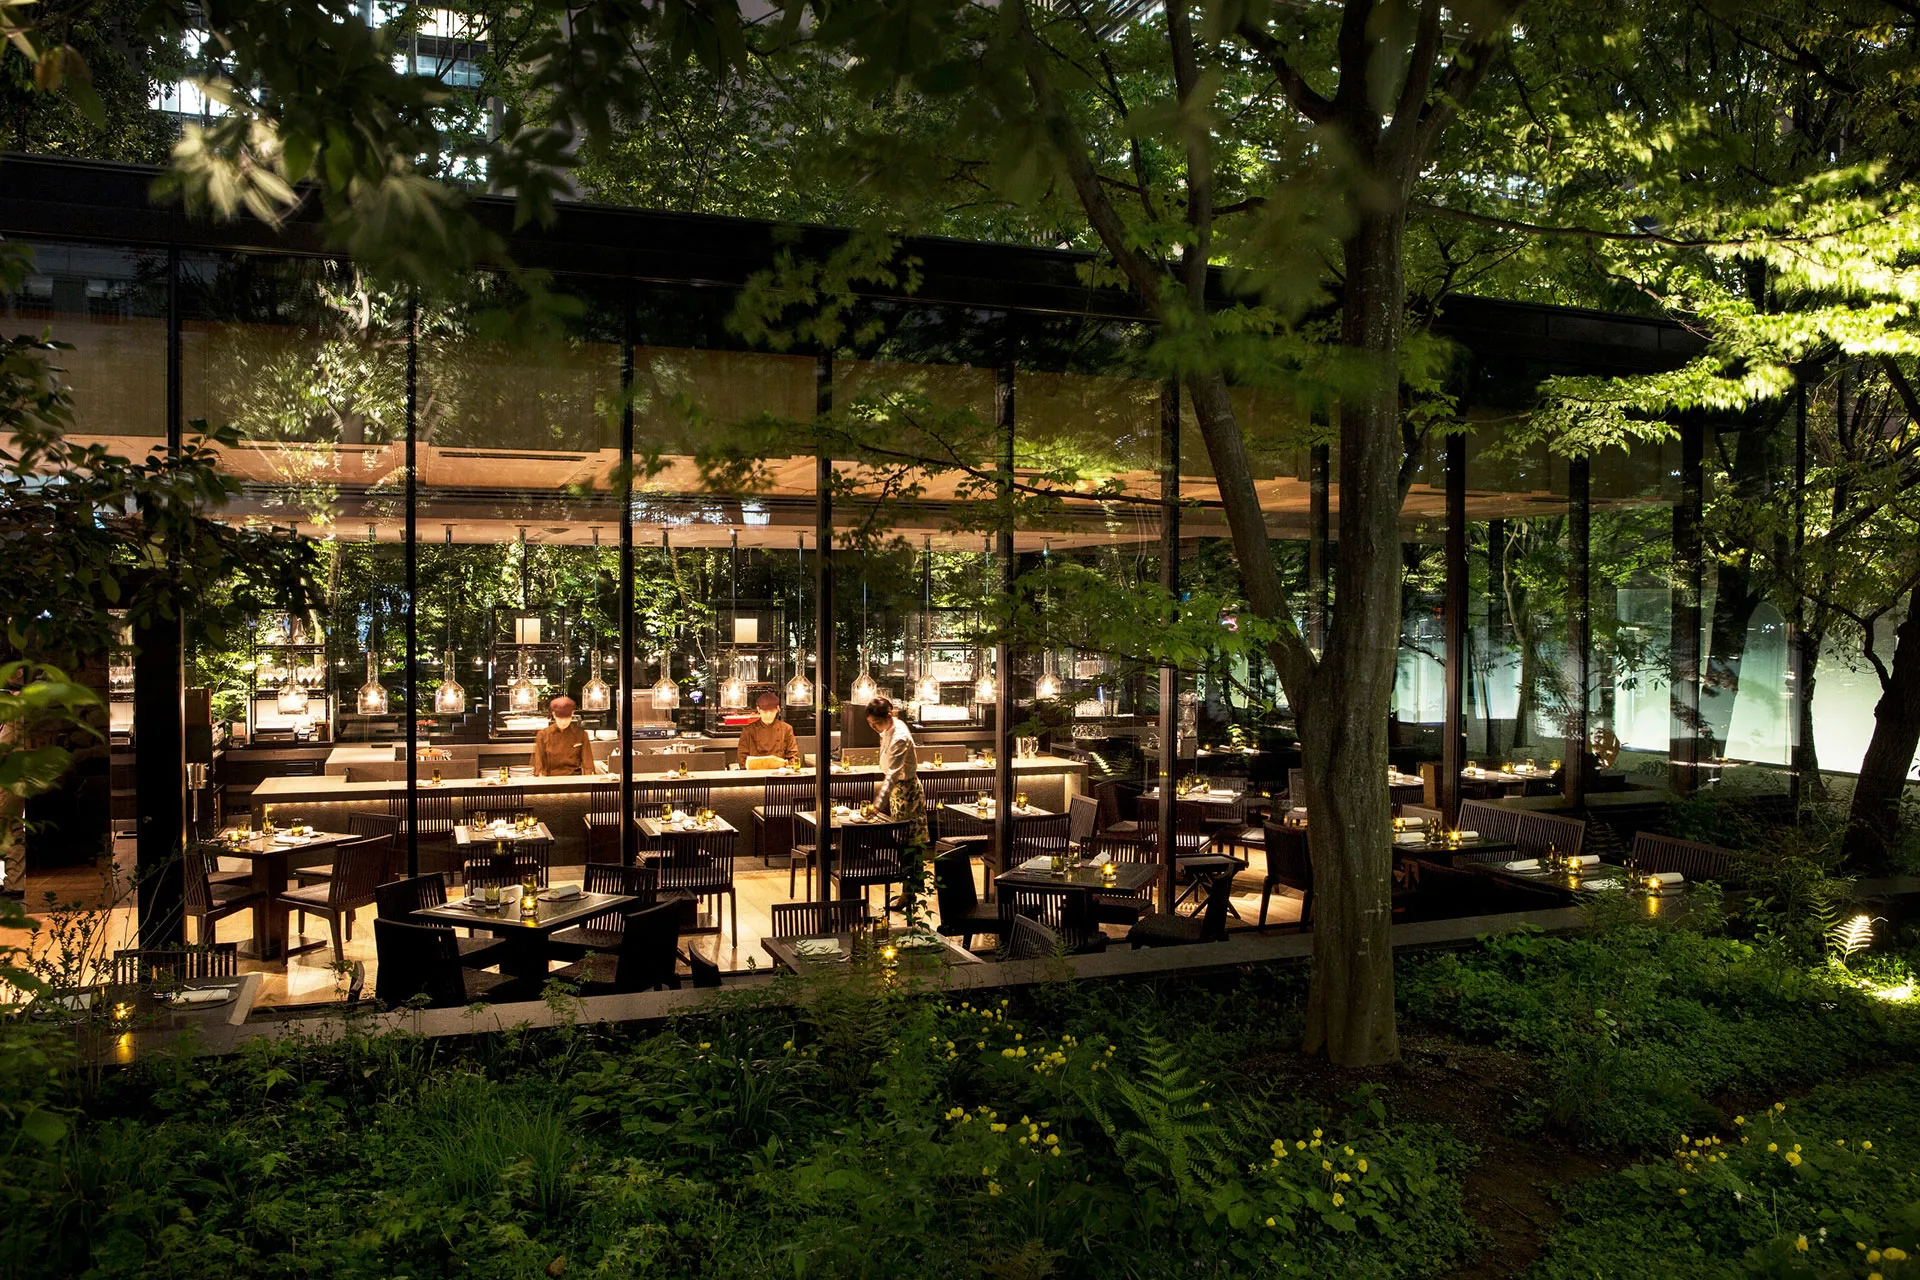 Beleuchtetes Restaurant unter grünen Bäumen